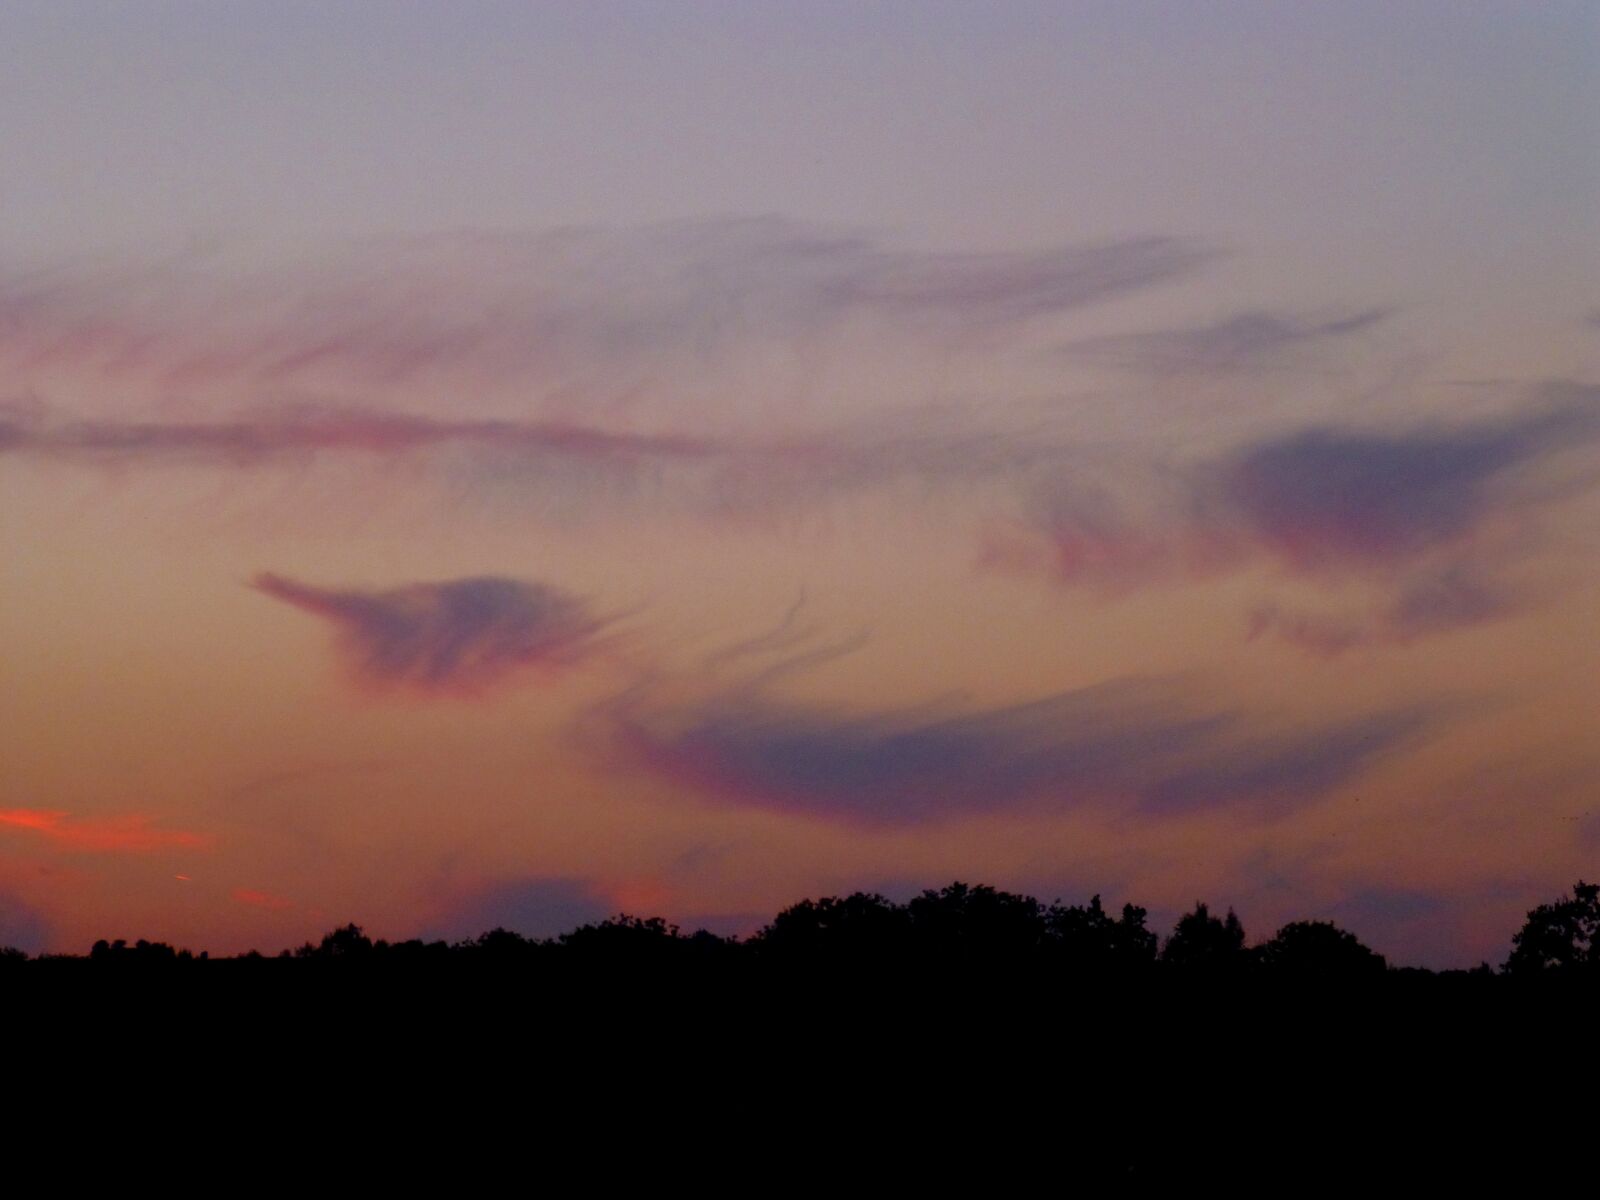 Panasonic DMC-TZ31 sample photo. Nature, evening sky, cloud photography